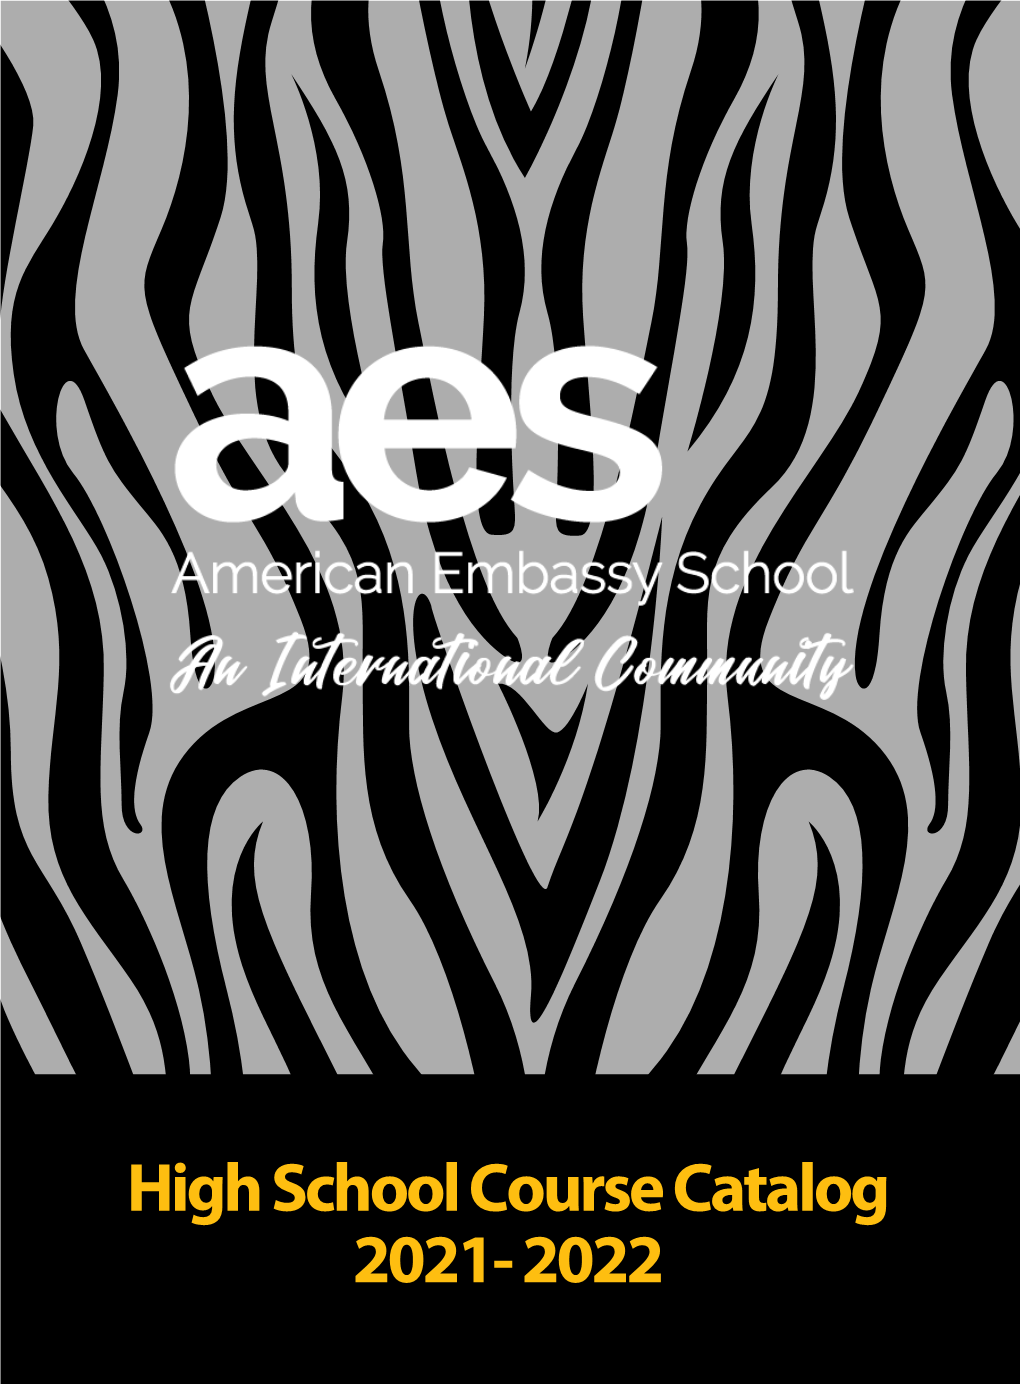 High School Course Catalog 2021- 2022